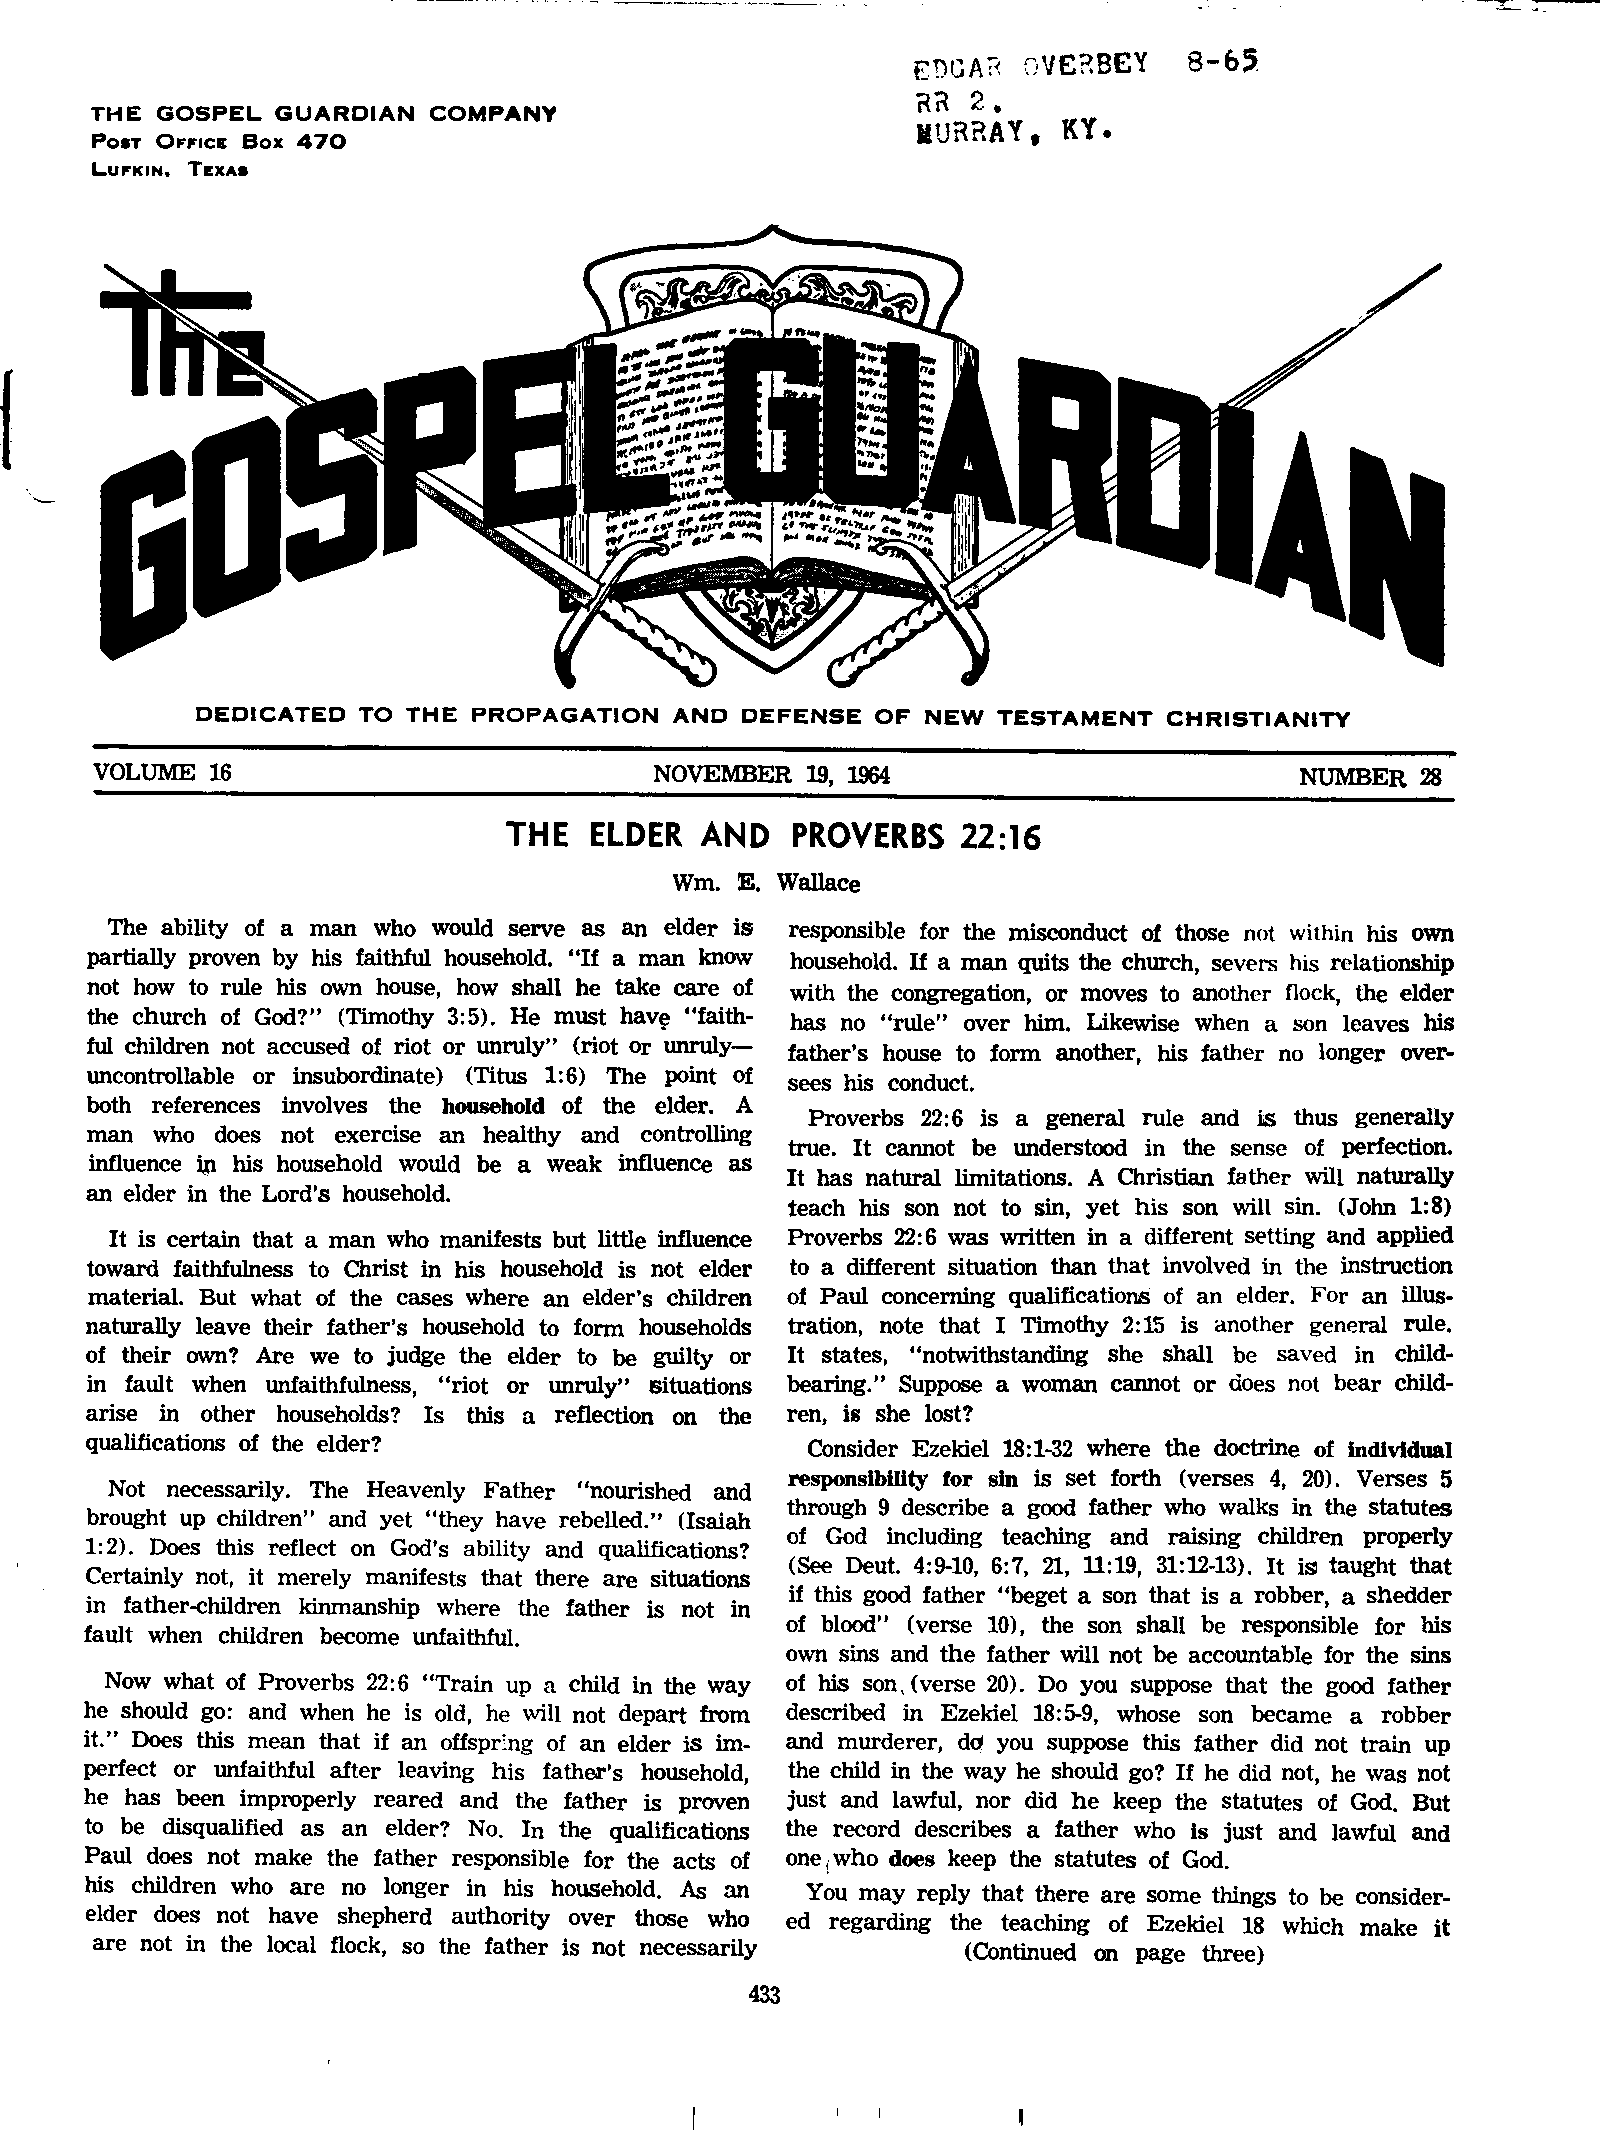 Gospel Guardian Original: Vol.16 No.28 Pg.1